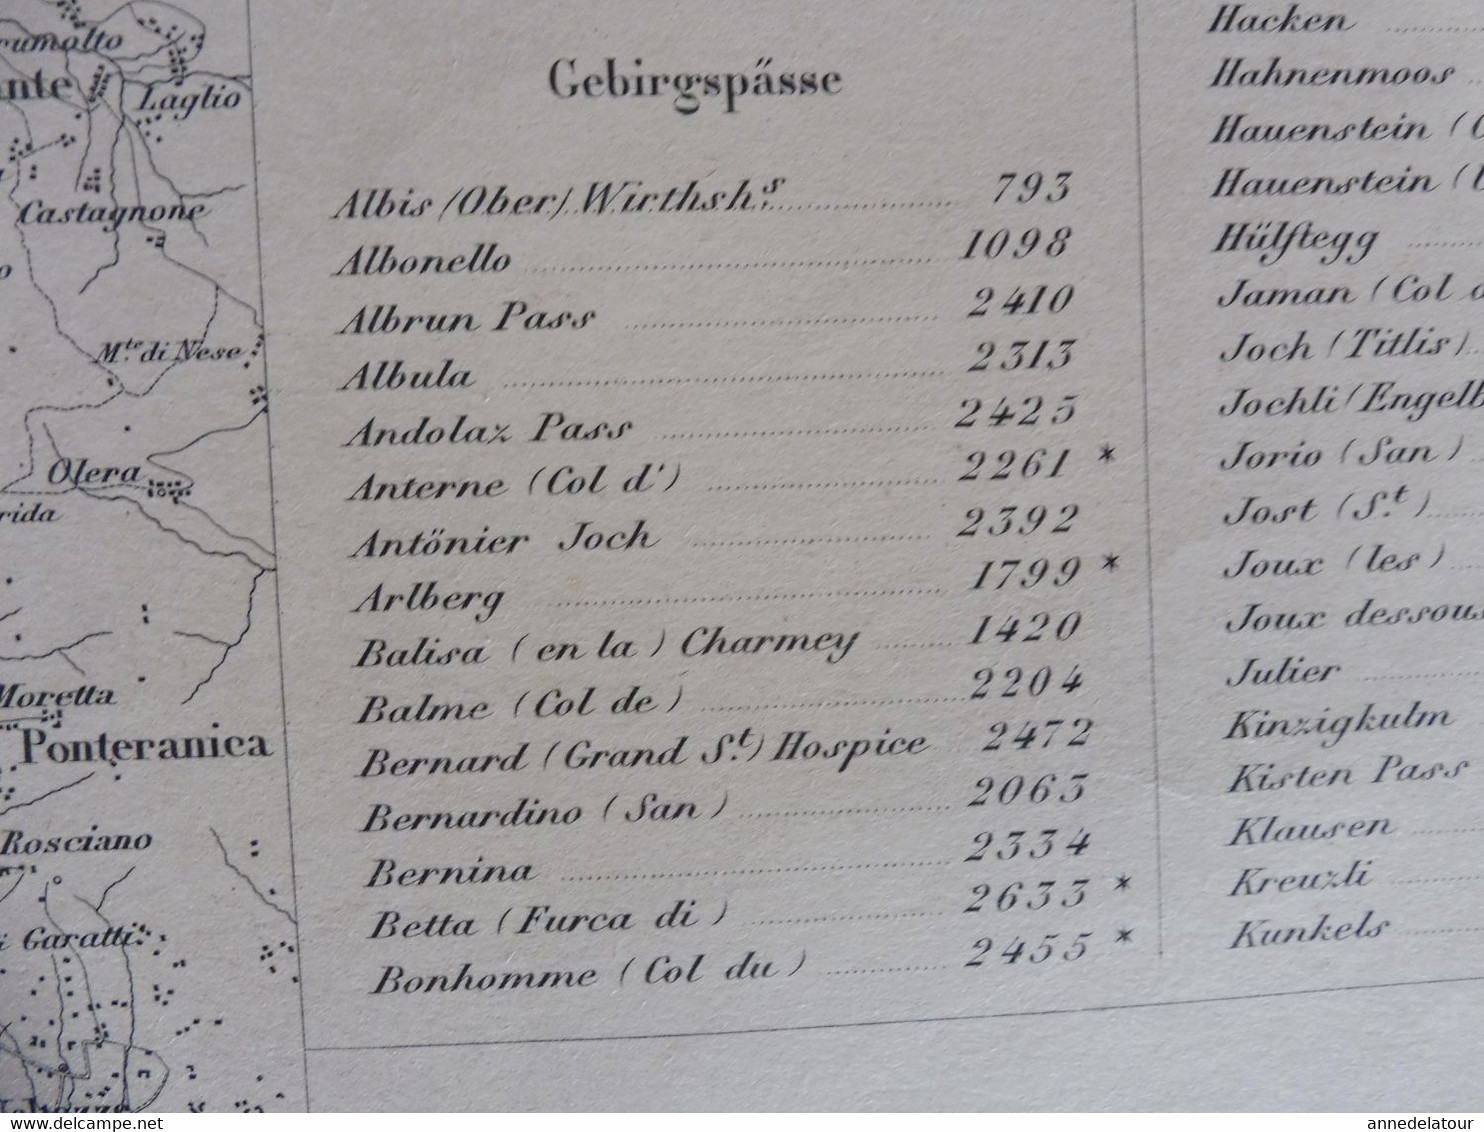 1862 Grande carte ancienne SCHWEIZ  N° 25 - HÖHEN DER VORZÜGLICHSTEN PUNKTE -EIDGENÖSSISHES MILITAIR ARCHIV  par Dufour